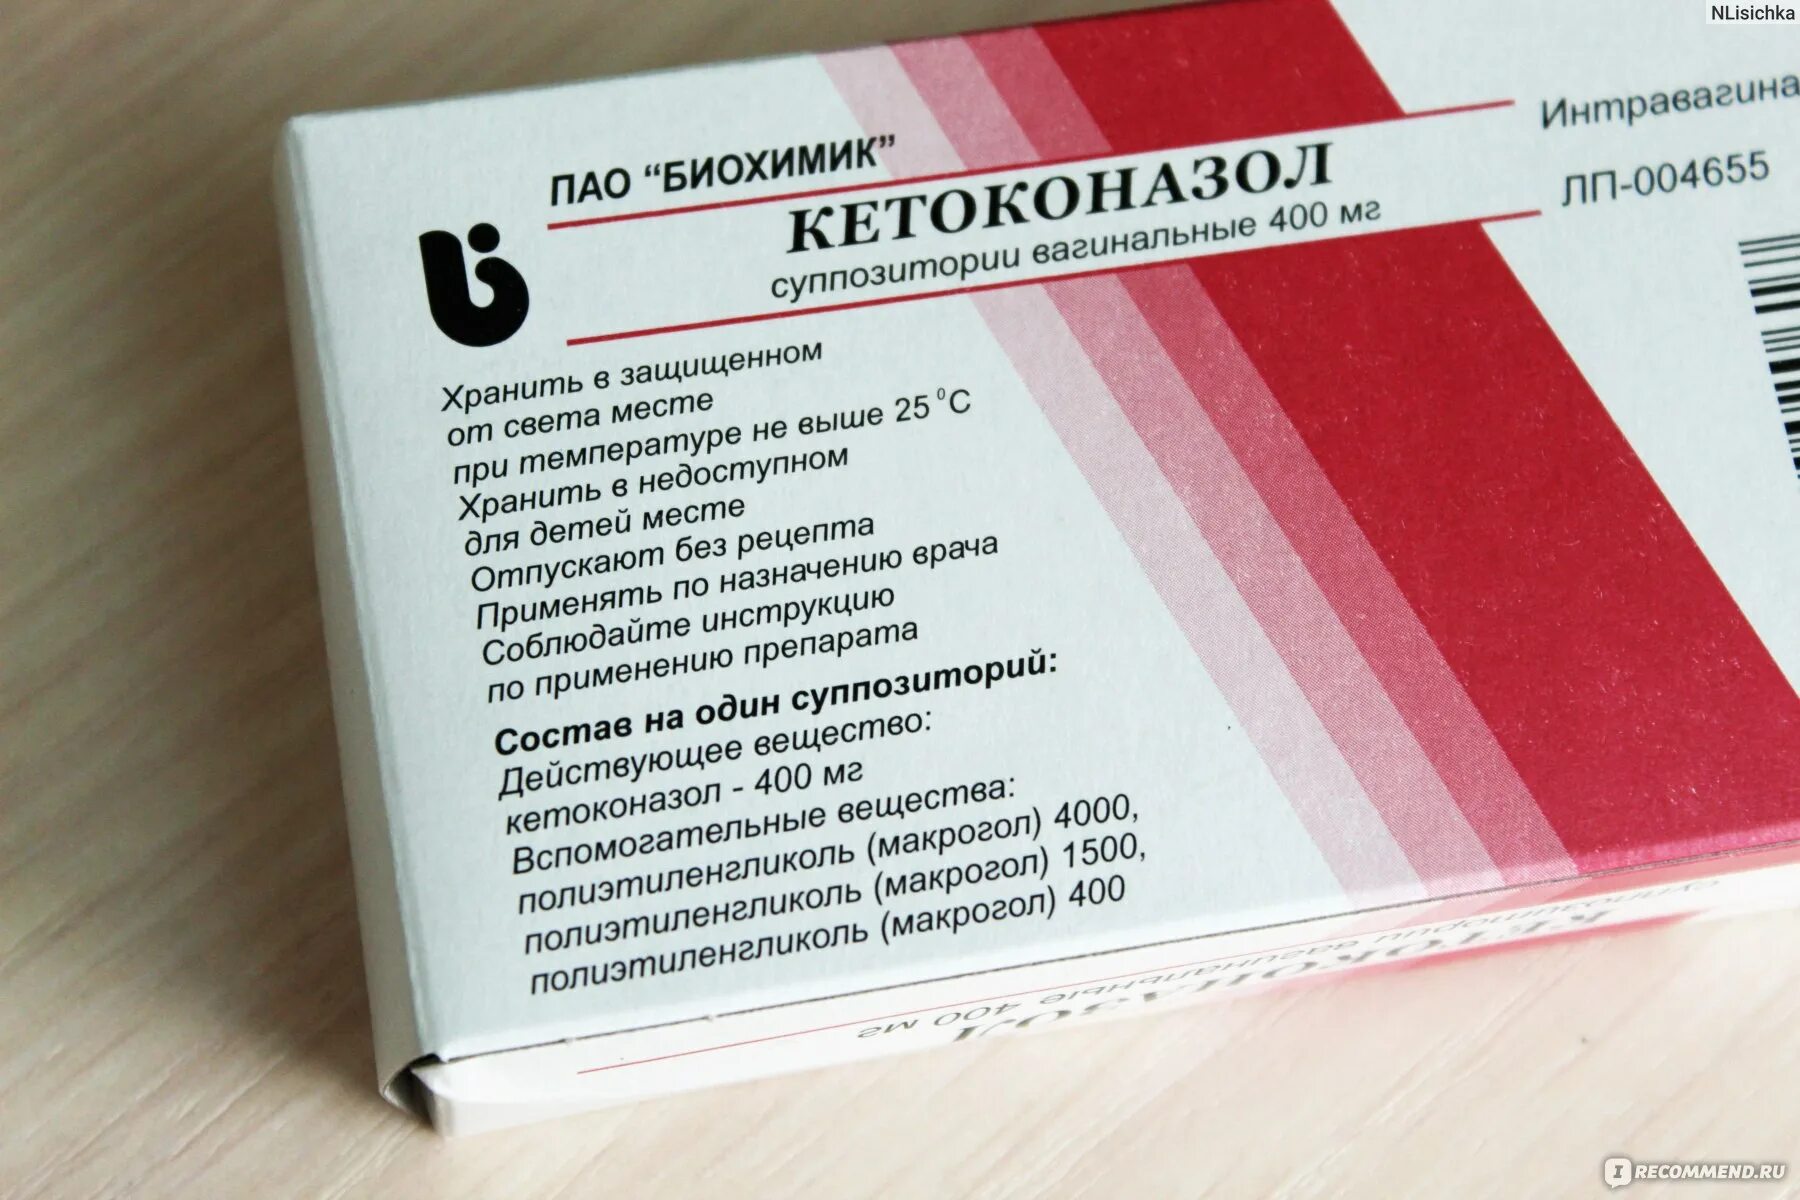 Просталамин таблетки отзывы мужчин. Кетоконазол суппозитории. Препарат от молочницы Кетоконазол. Суппозитории кетоконазола. Кетоконазол свечи препараты.